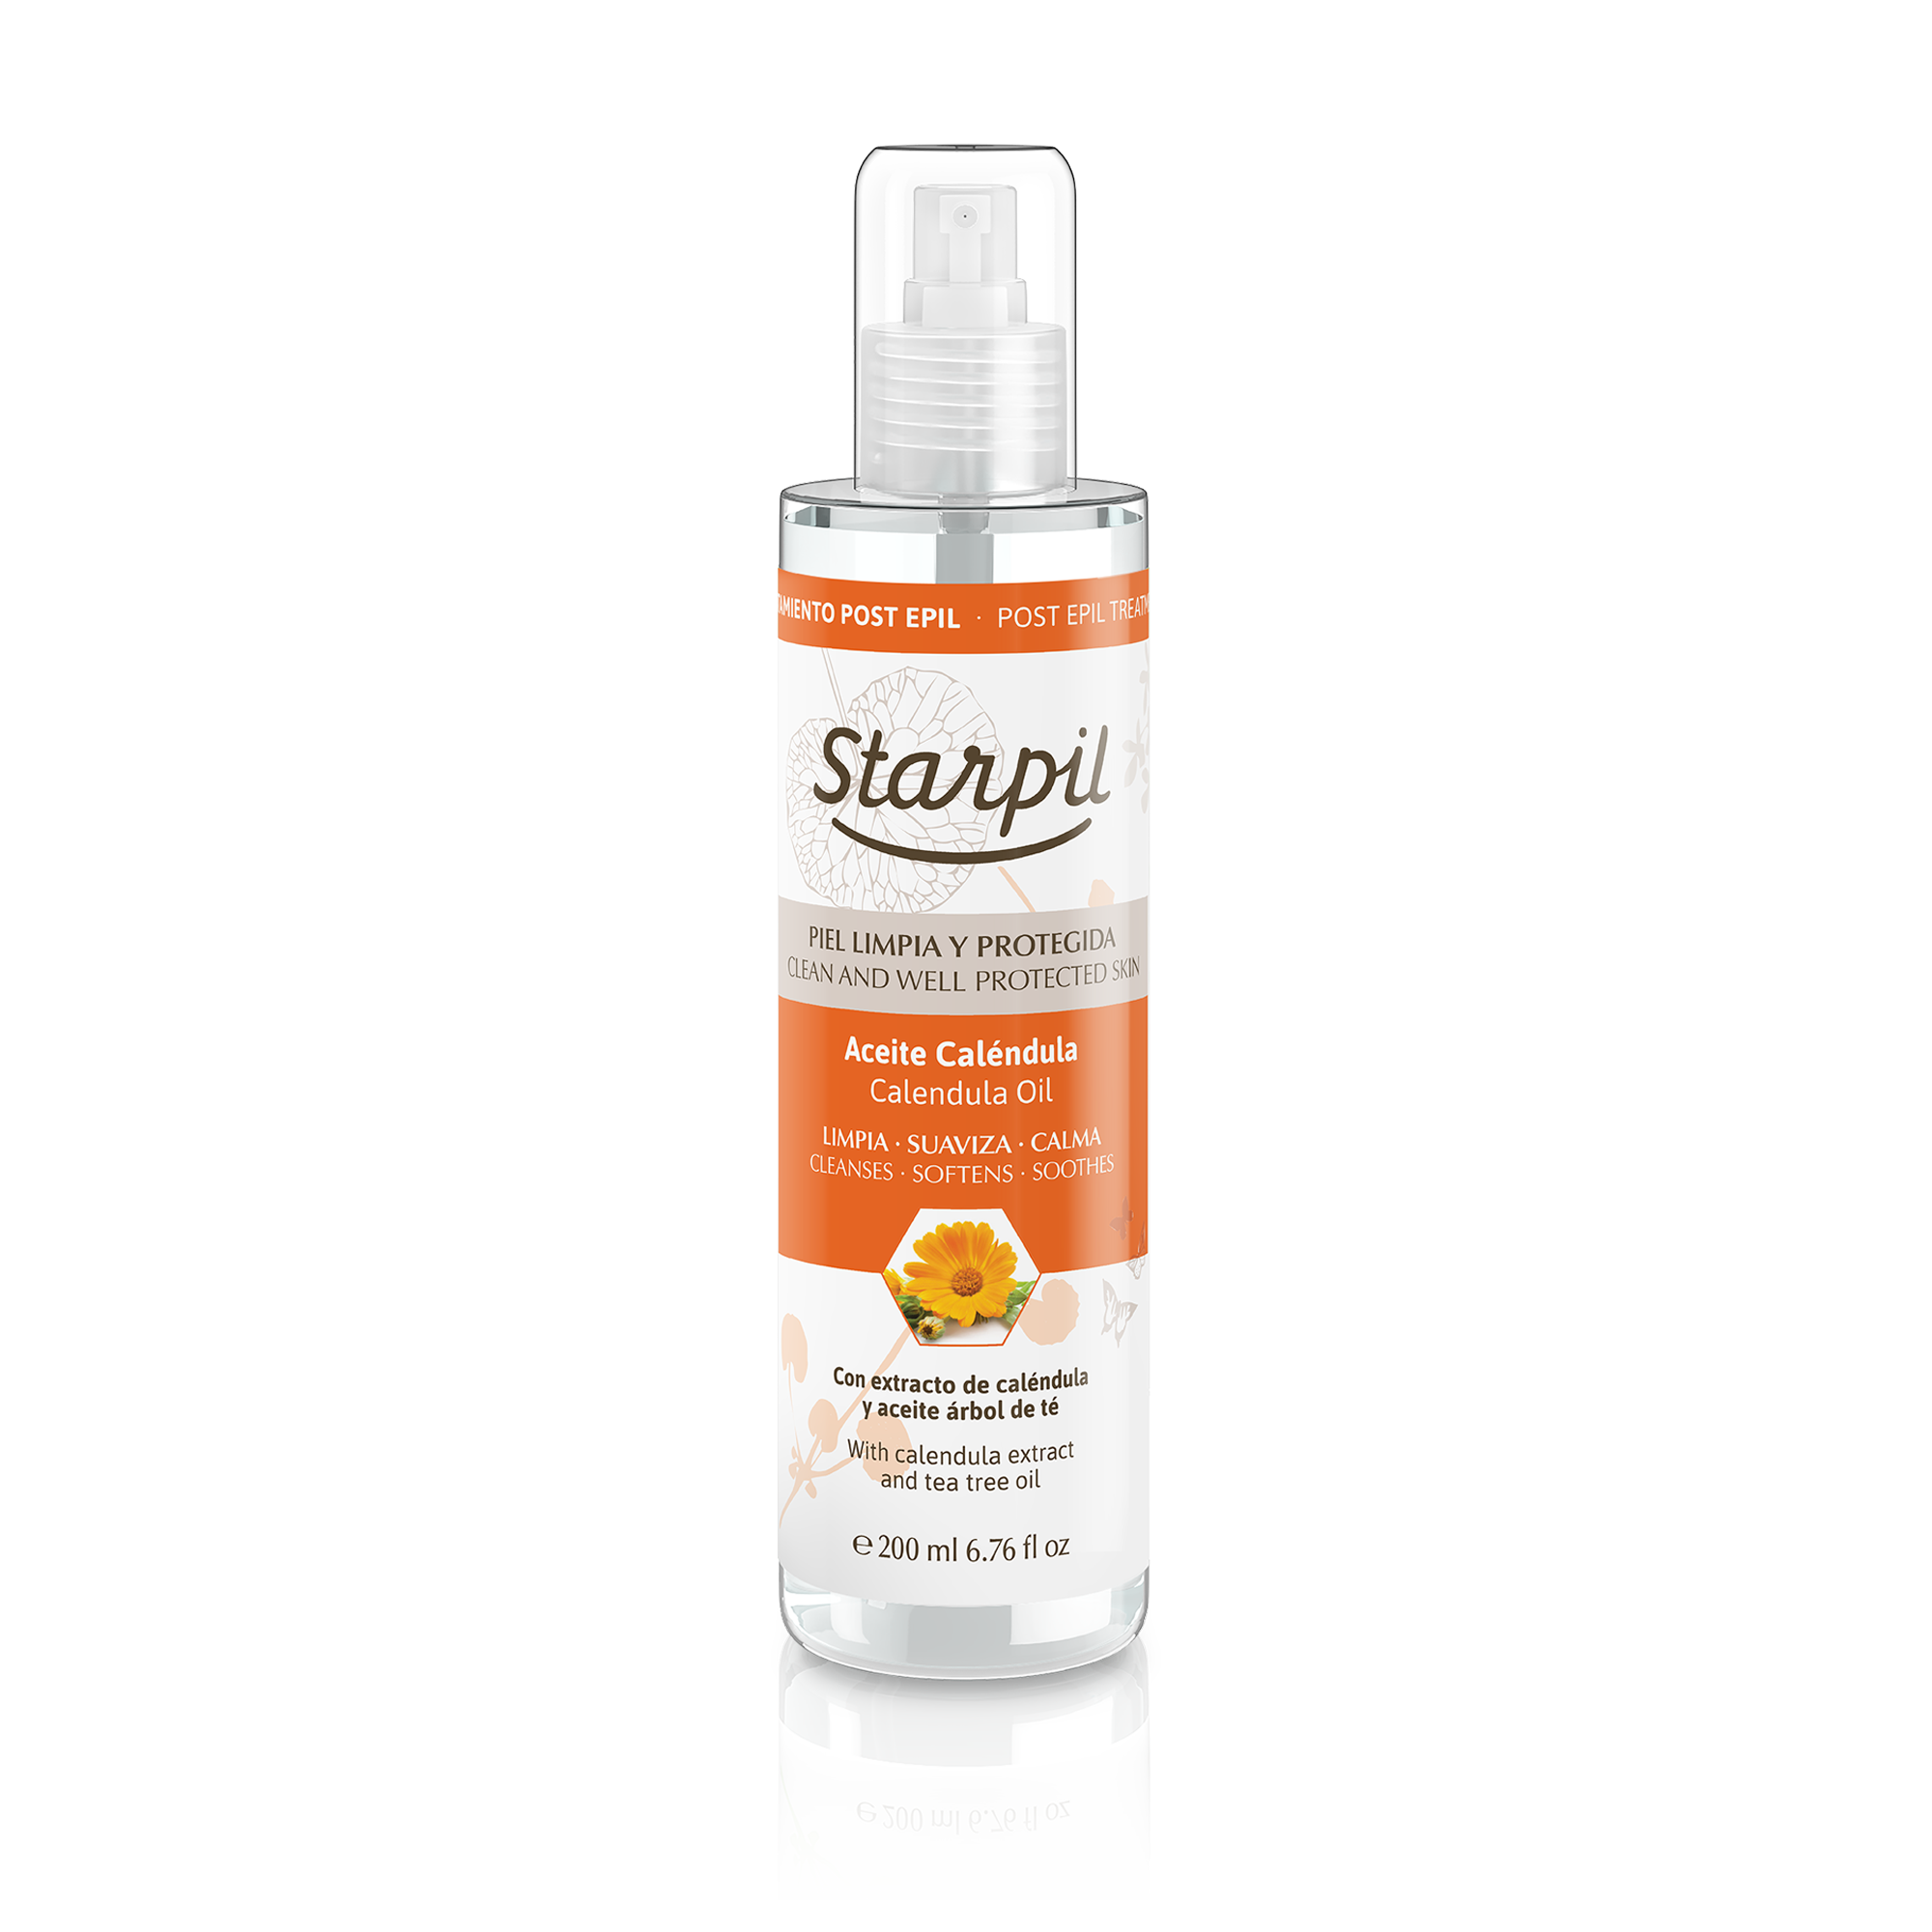 Post Wax Essential Oil – Skin Healing, Anti-Inflammatory Oil